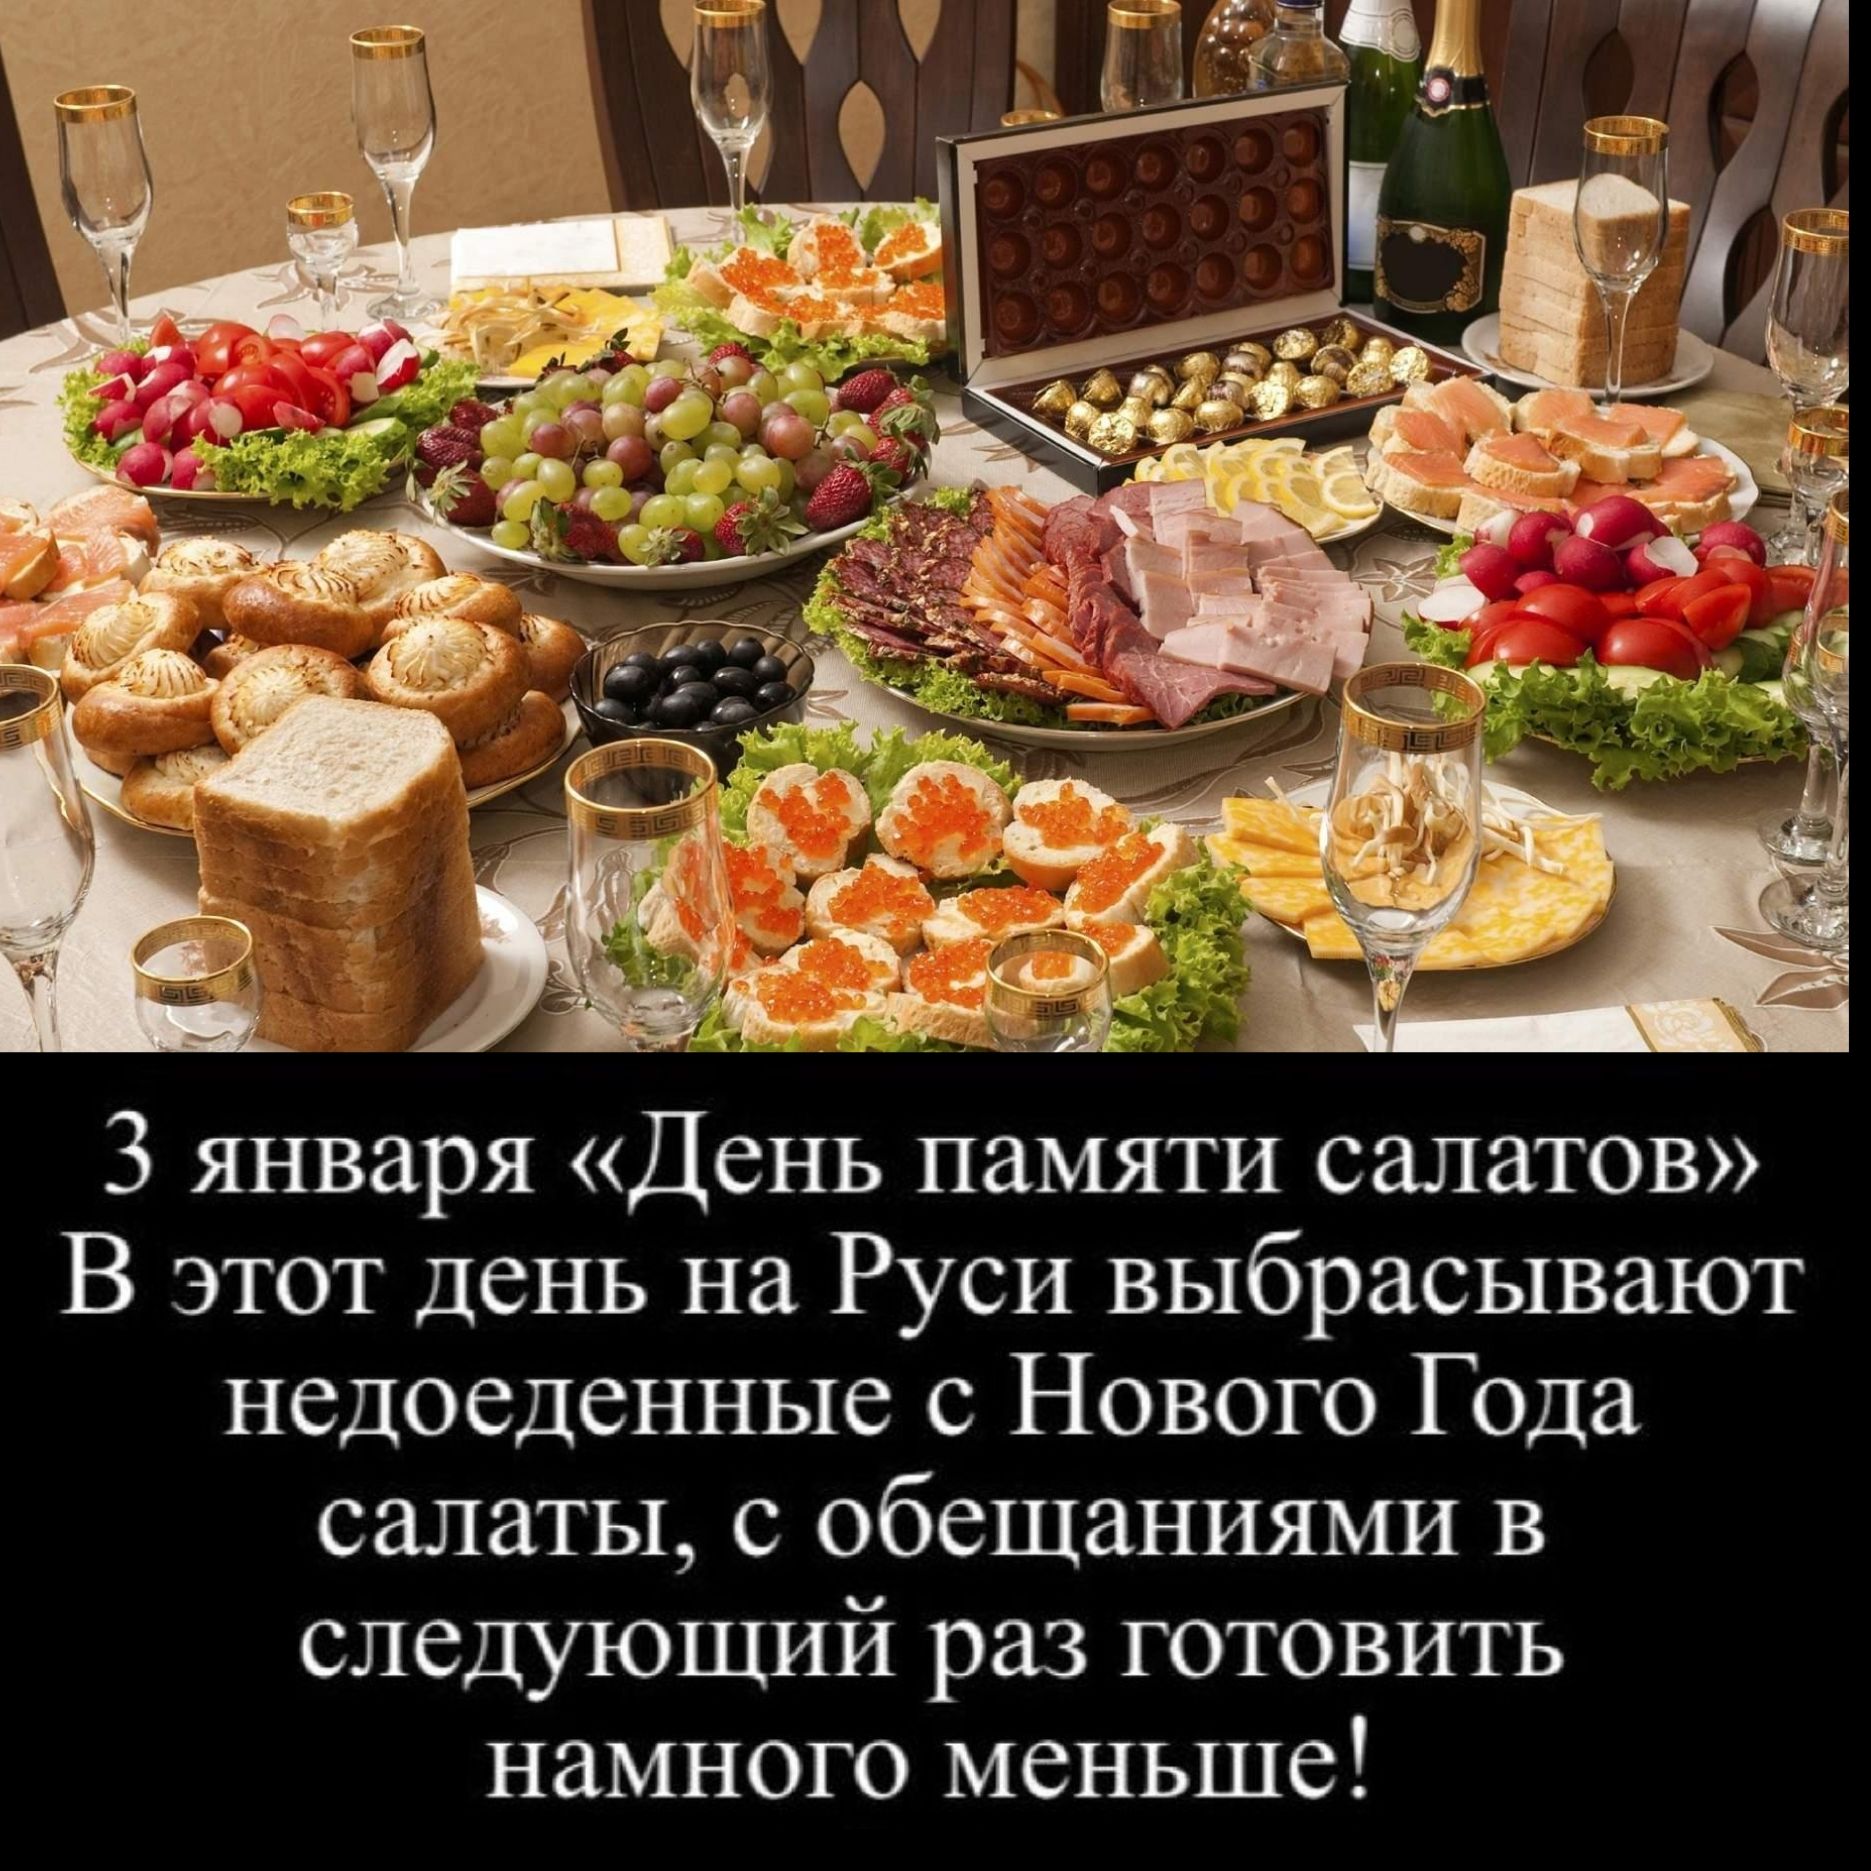 3 января День памяти салатов В этот день на Руси выбрасывают недоеденные с Нового Года салаты с обещаниями в следующий раз готовить намного меньше